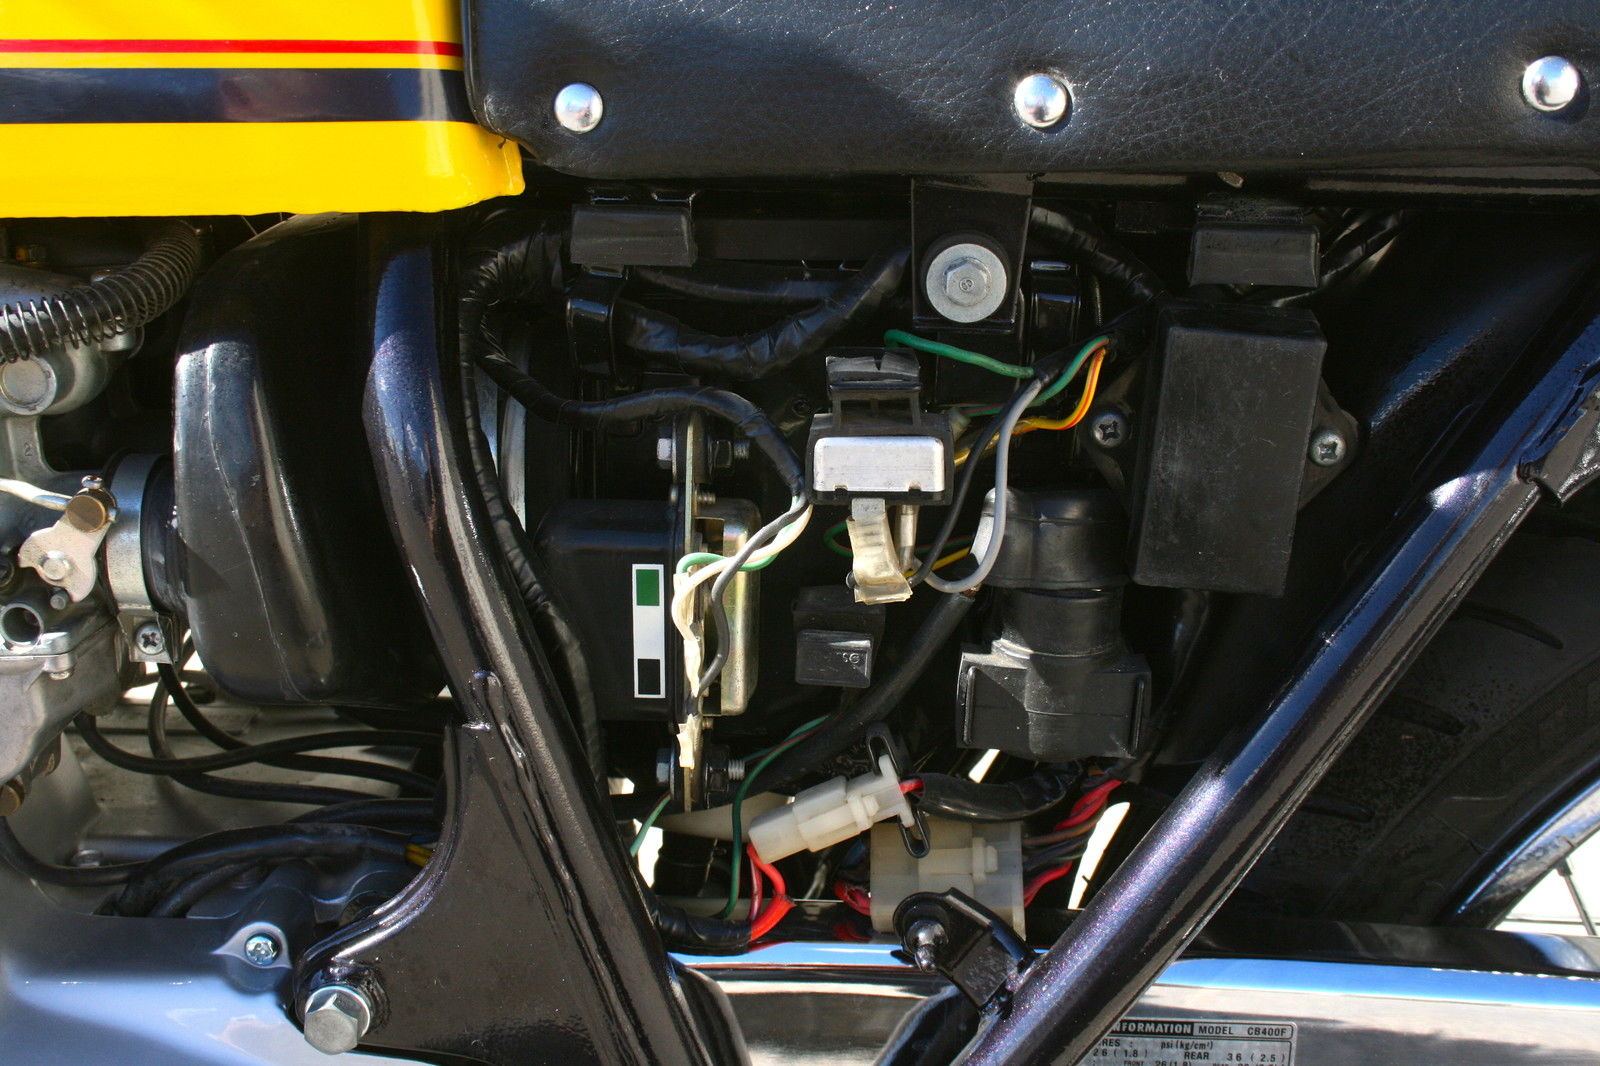 Honda CB400F - 1977